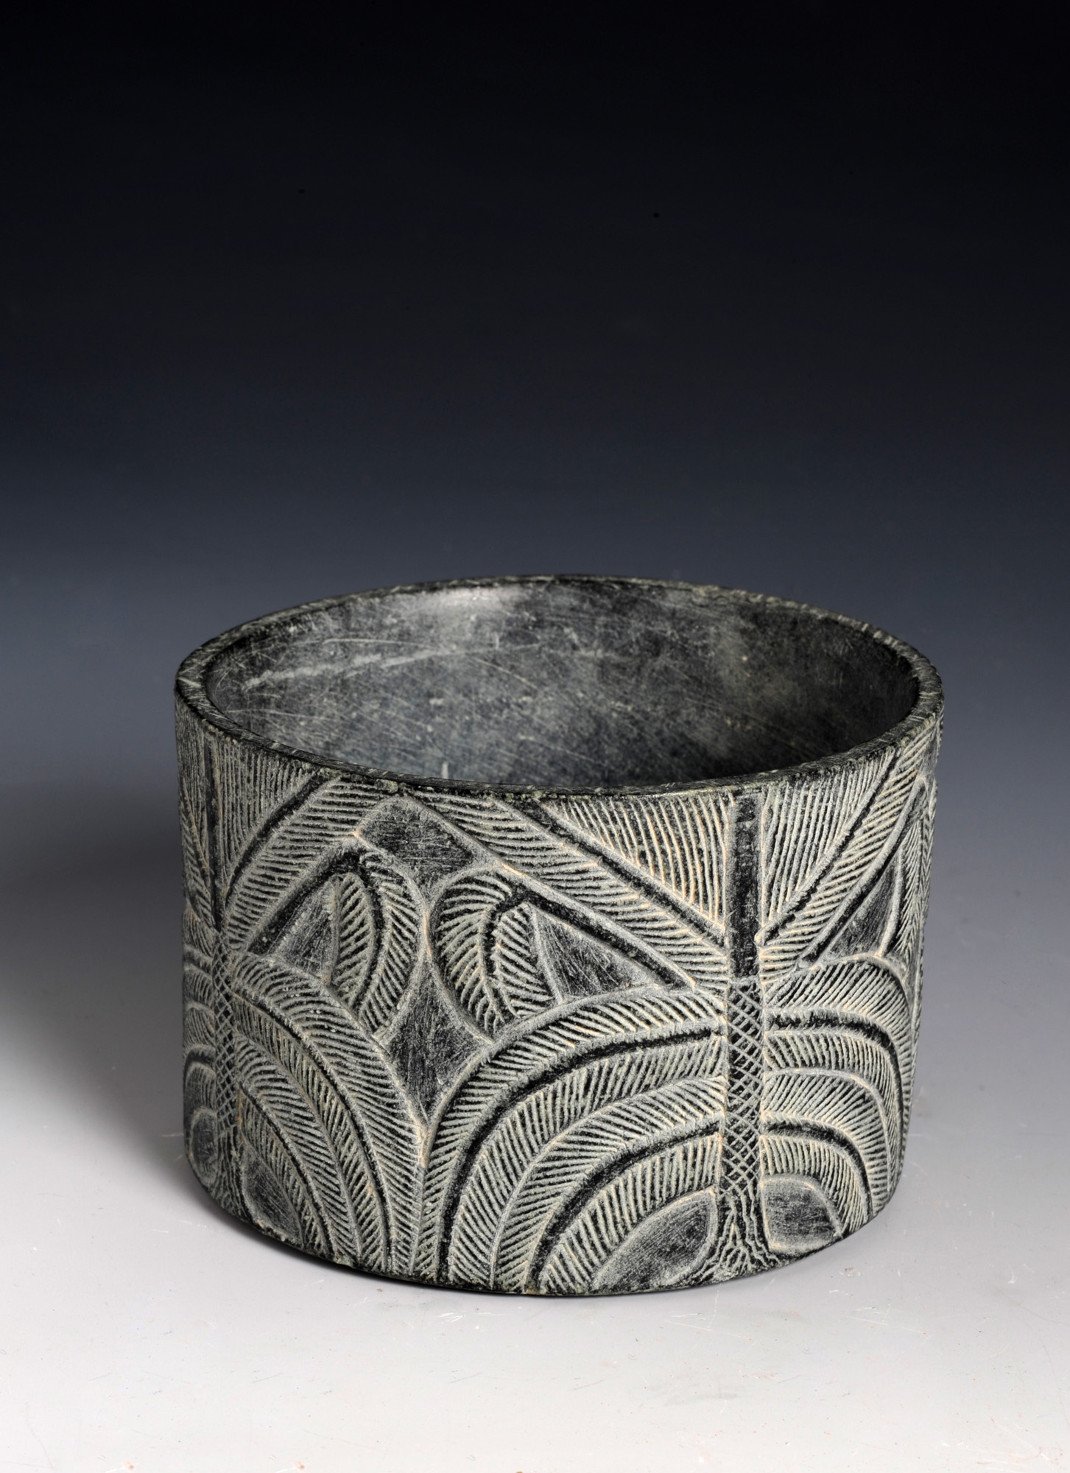 Κυλινδρικό αγγείο με φοίνικα. Τέλη 3ης χιλιετίας π.Χ. Χλωρίτης. Εθνικό Μουσείο, Ριάντ